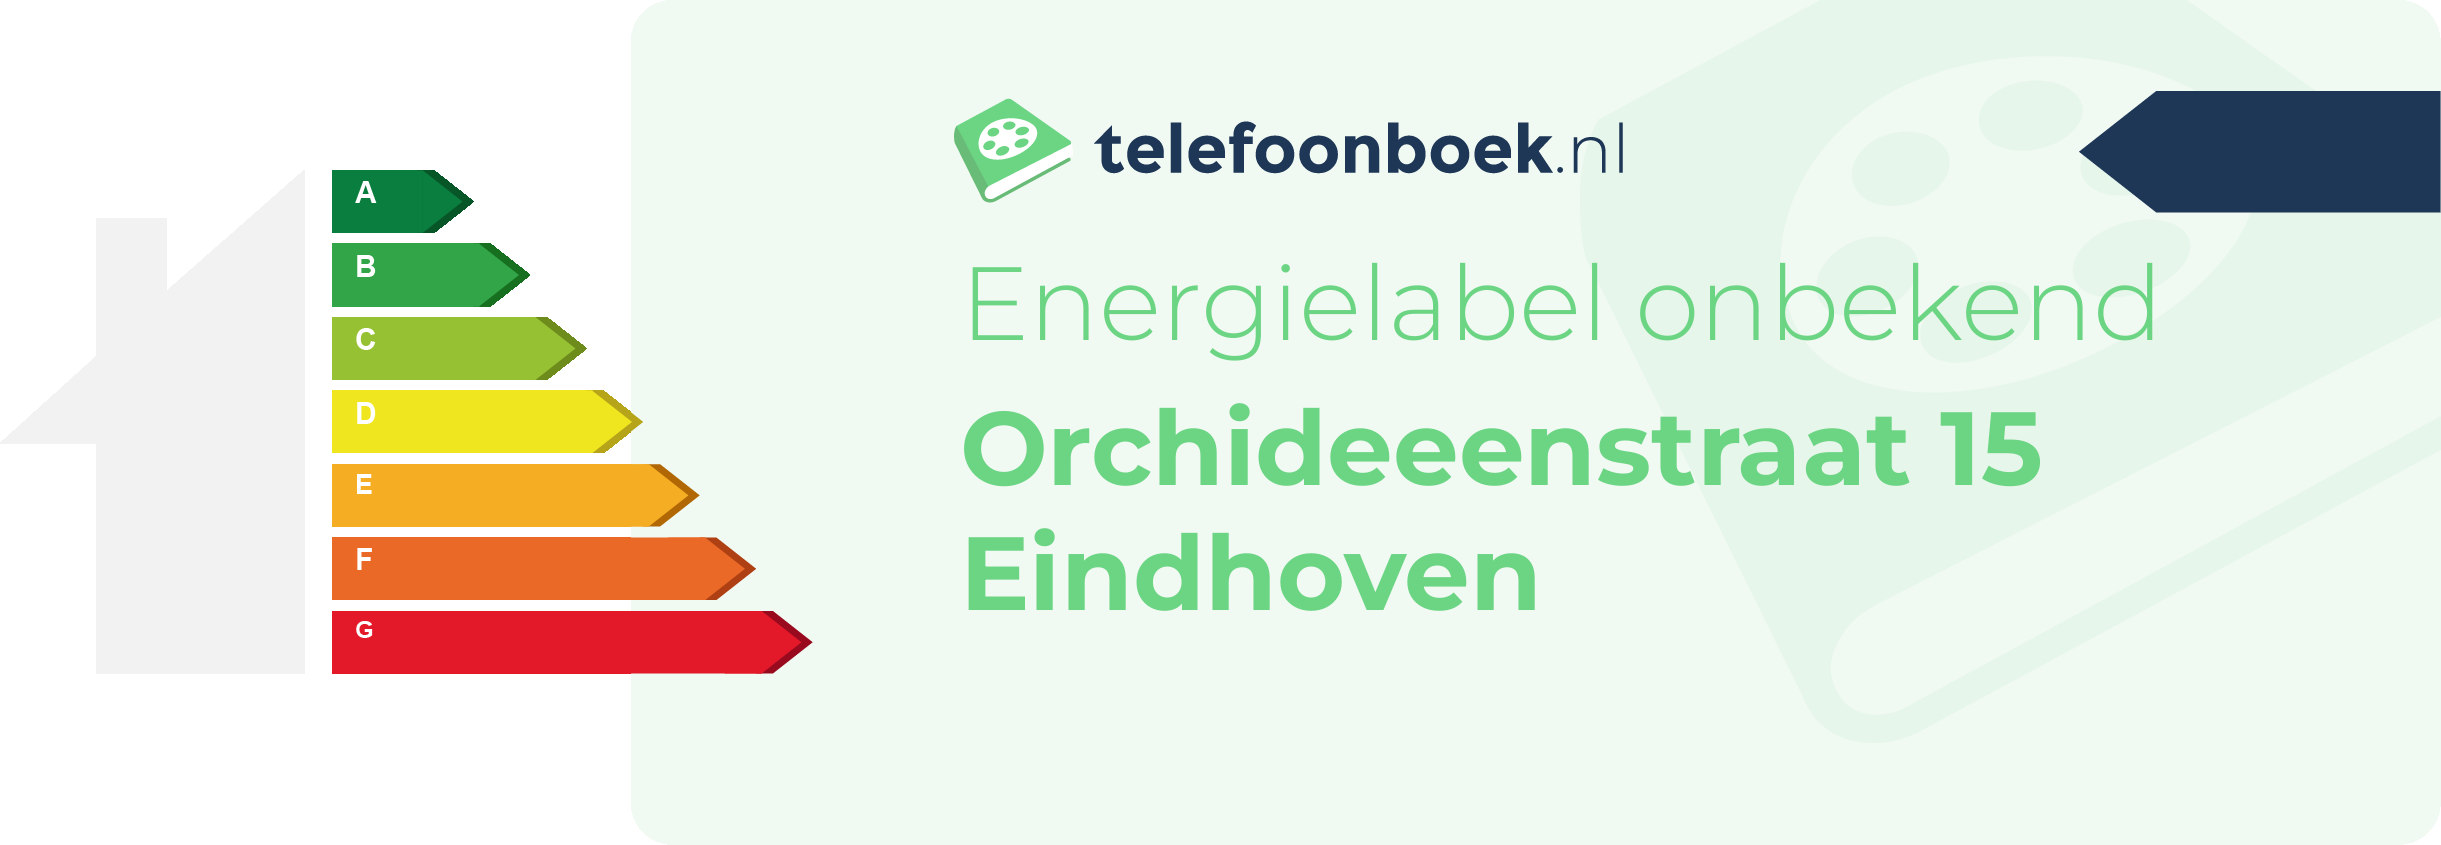 Energielabel Orchideeenstraat 15 Eindhoven